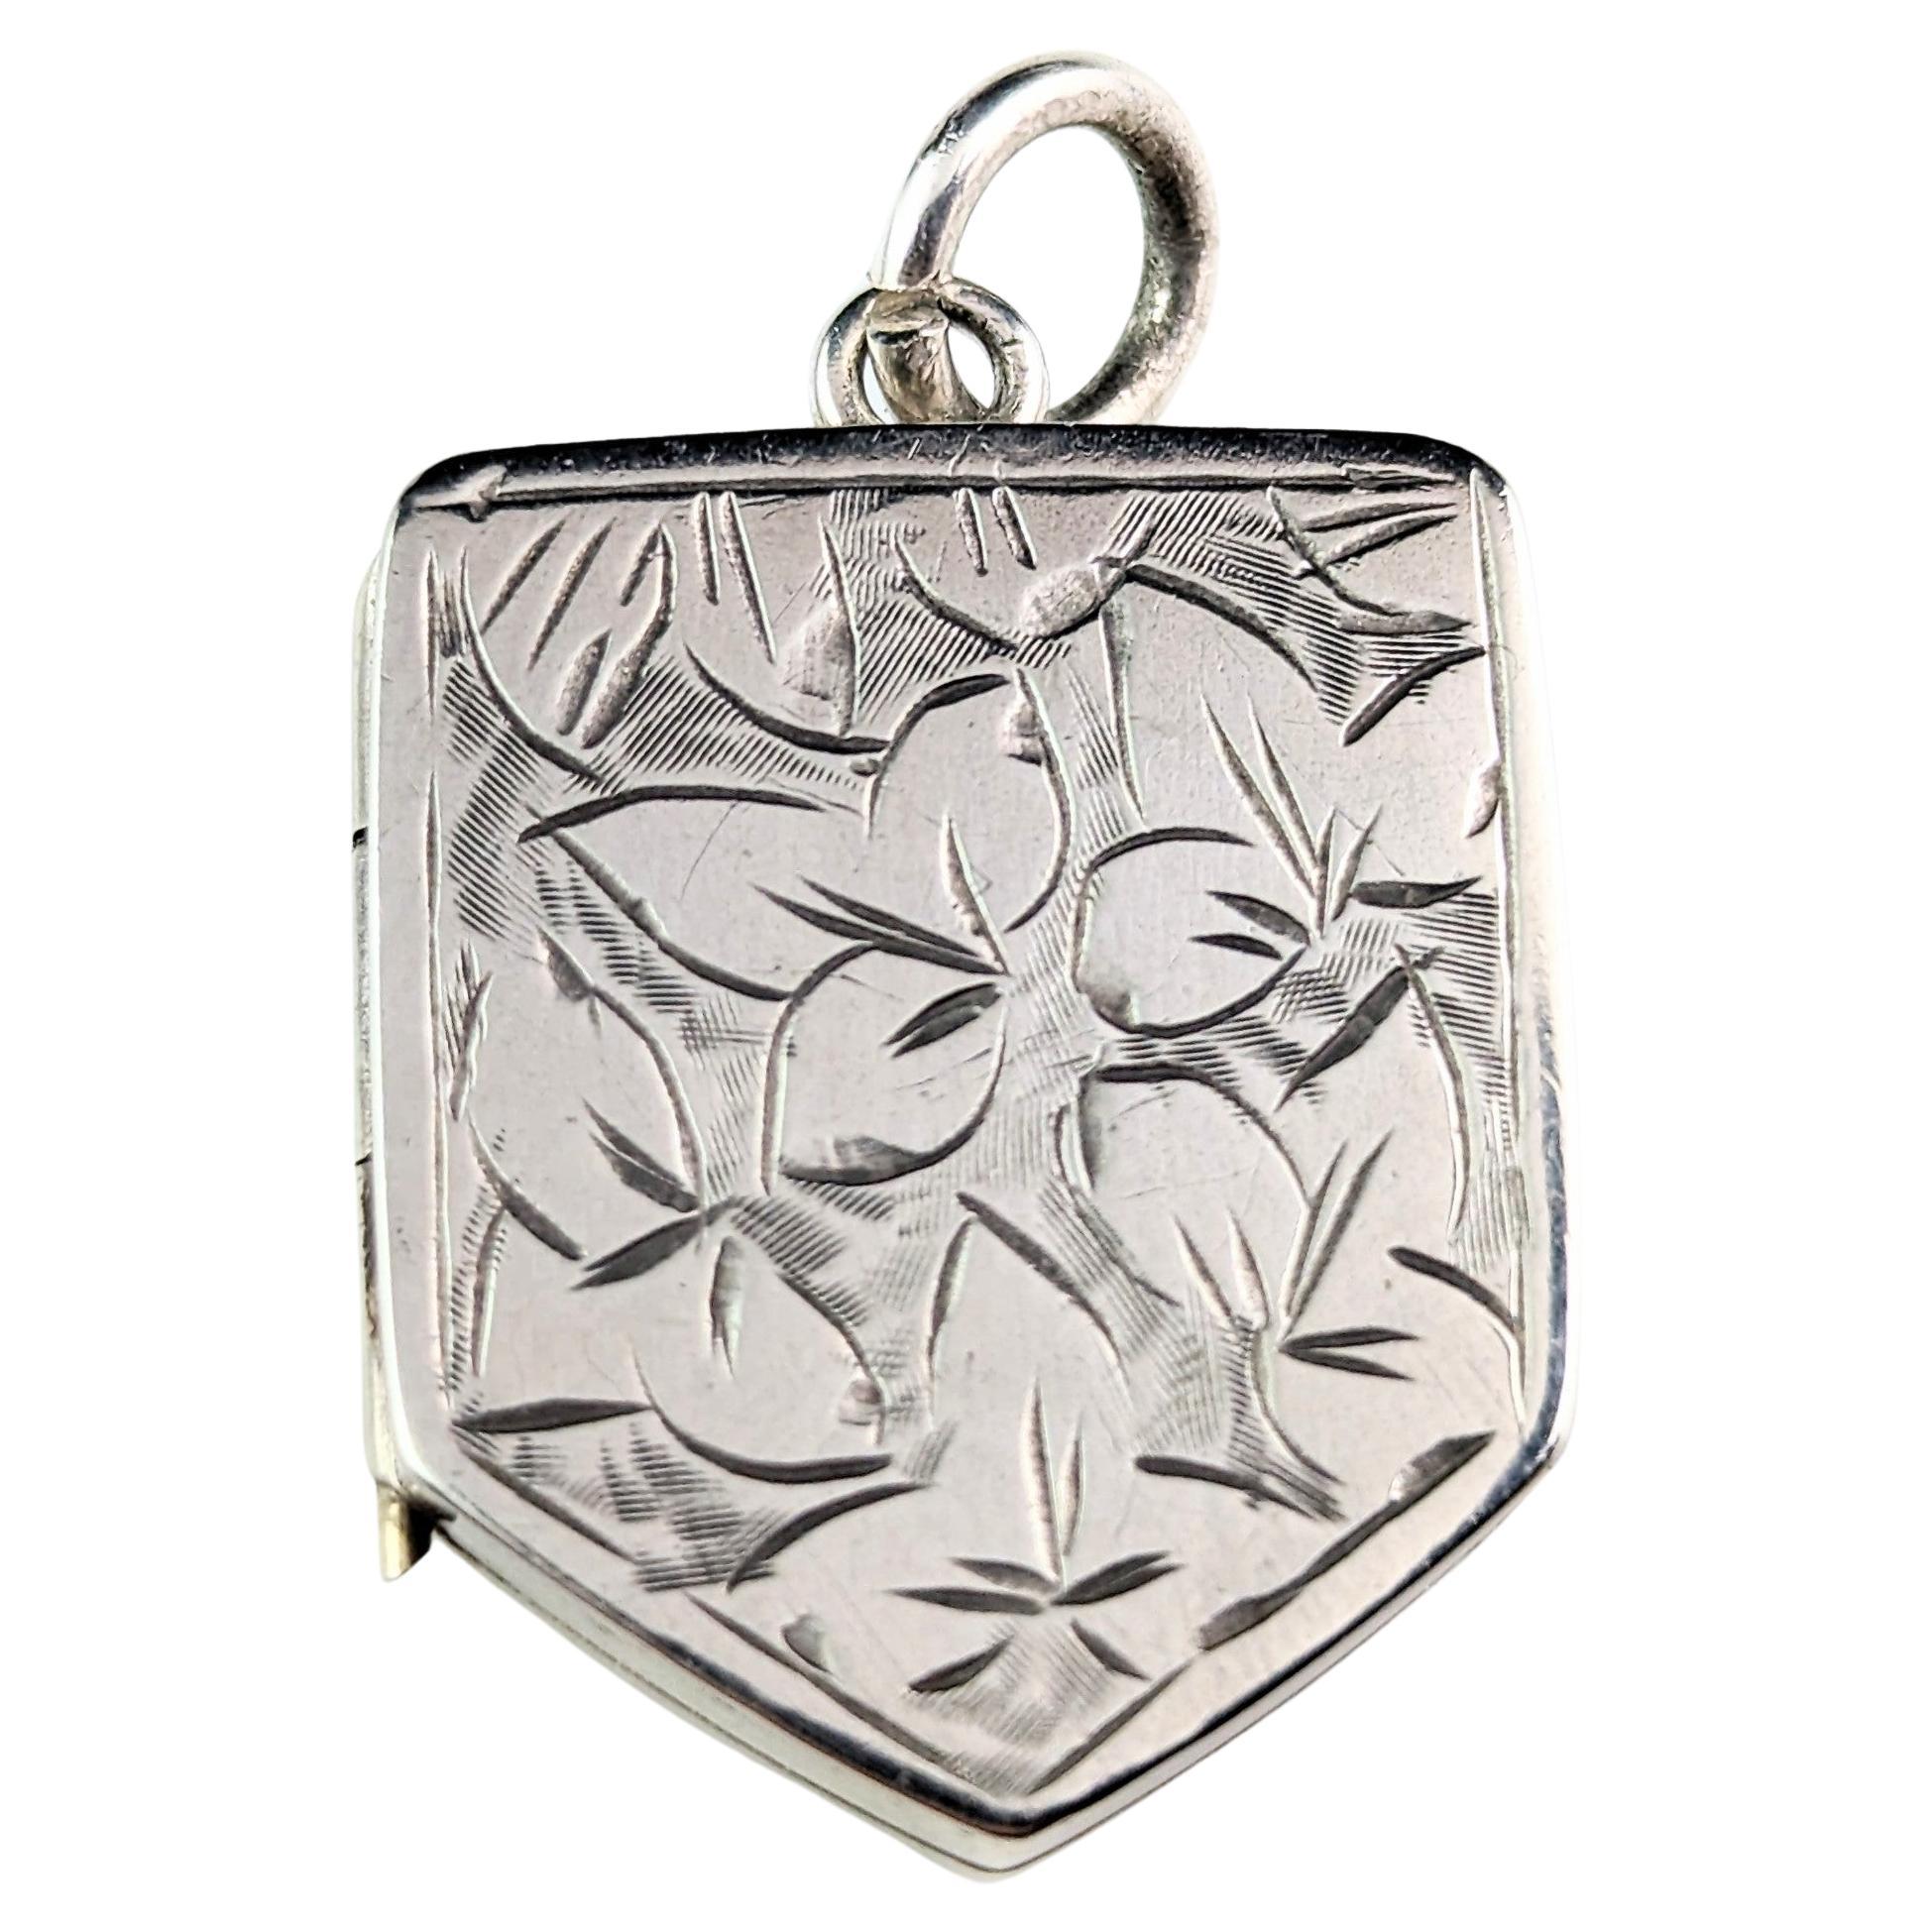 Antique Silver Locket Pendant, Leaf Engraved, Shield Shaped